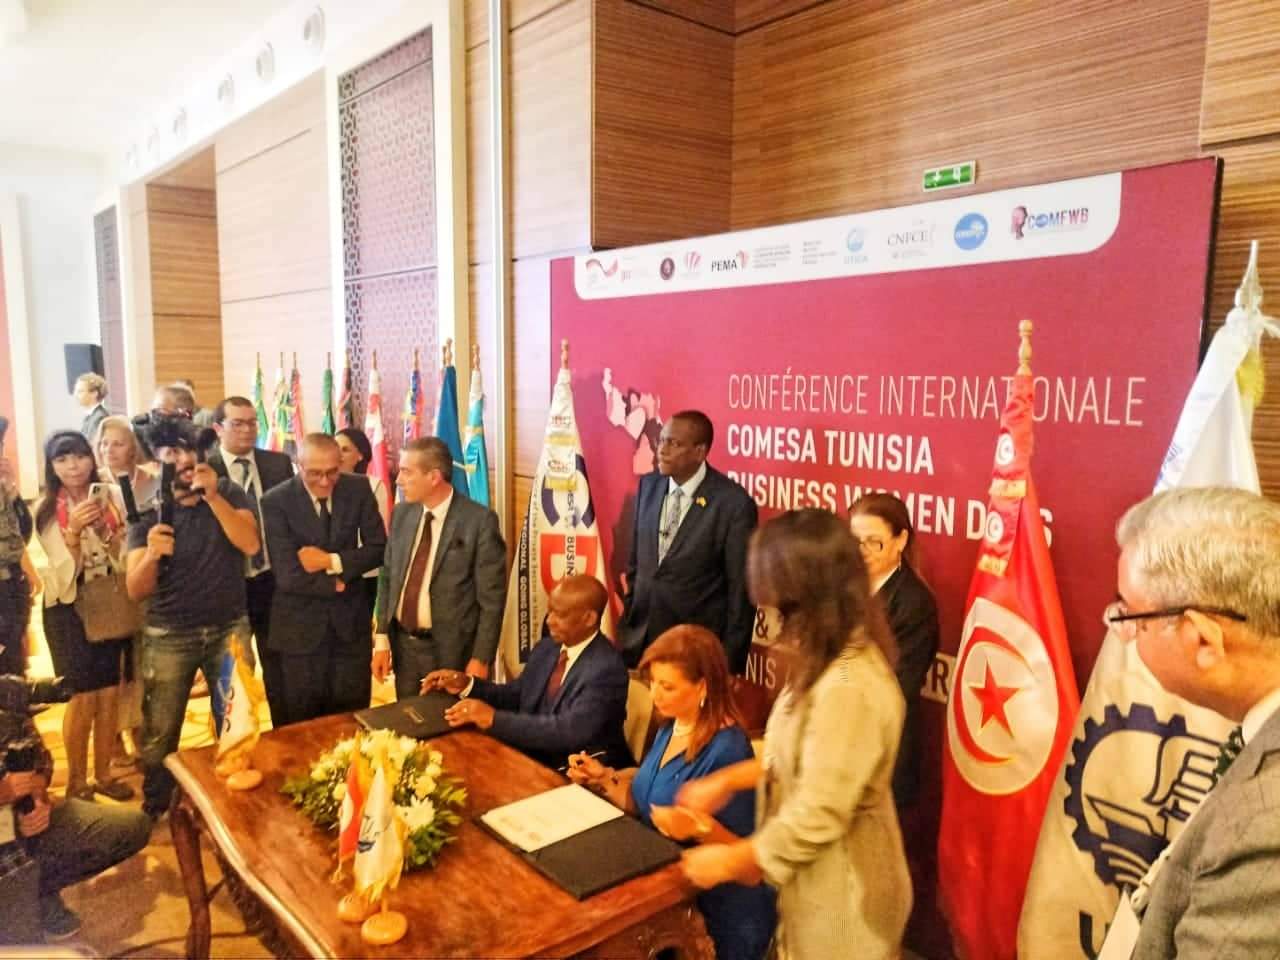 ليلى بلخيرية لـ"الصباح نيوز" : اتفاقية "الكوميسا" الموقعة ستنظم العمليات التجارية والبنكية لتونس في افريقيا   